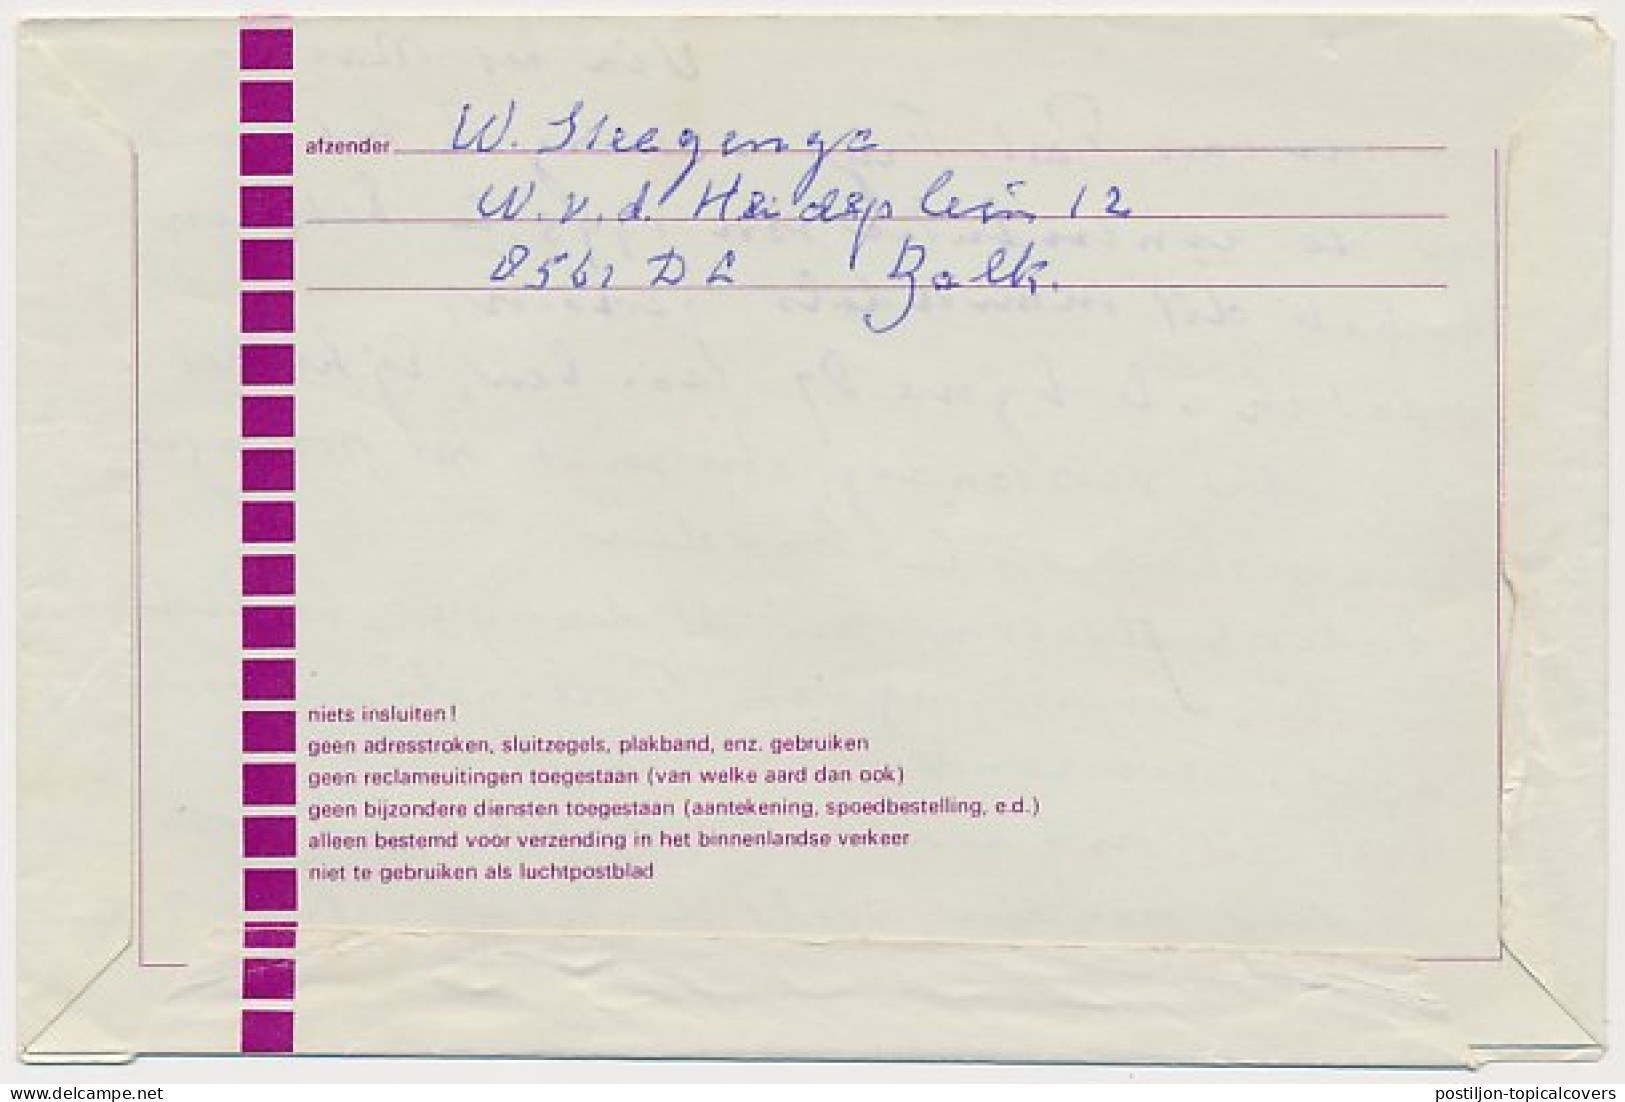 Postblad G. 24 / Bijfrankering Balk - Leeuwarden 1993 - Postwaardestukken